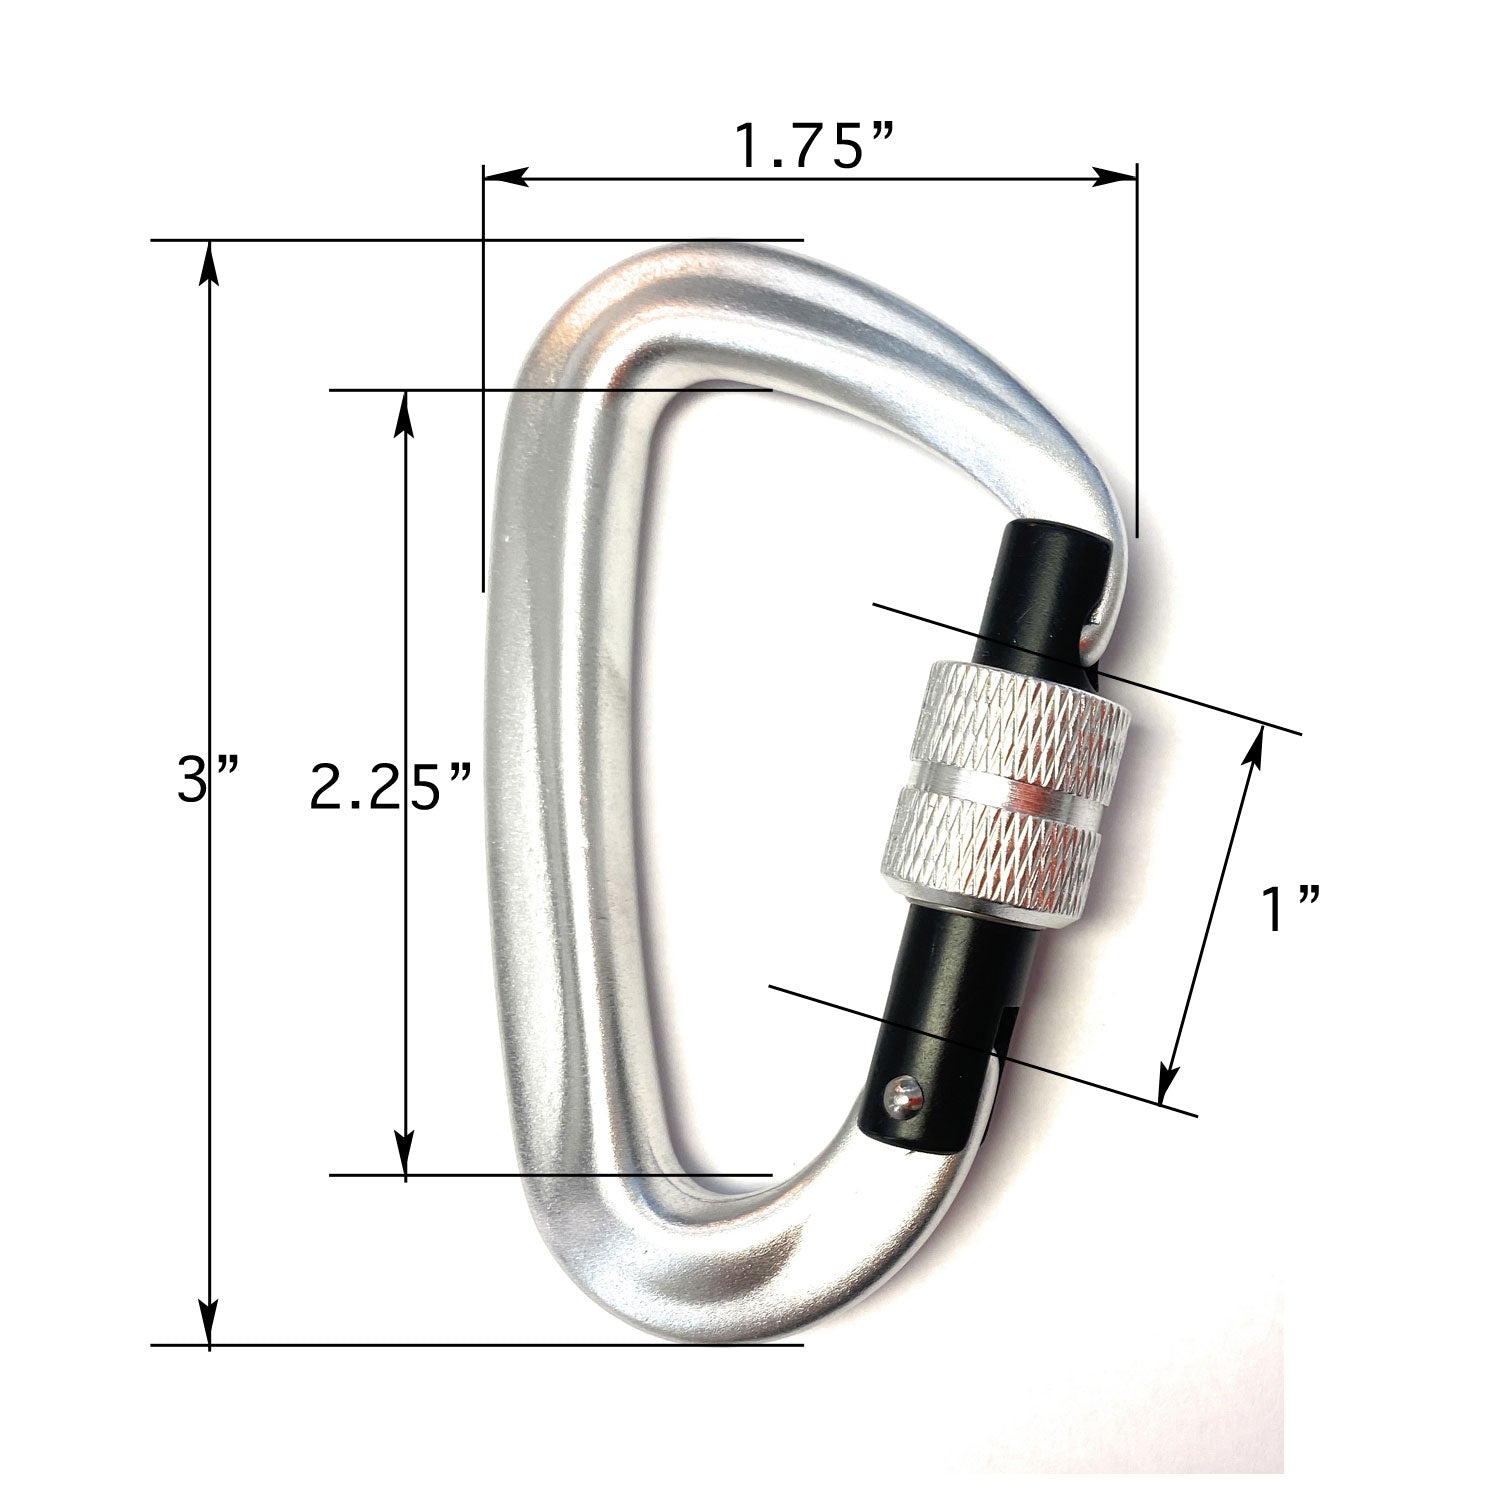 Locking Carabiner - Measurements